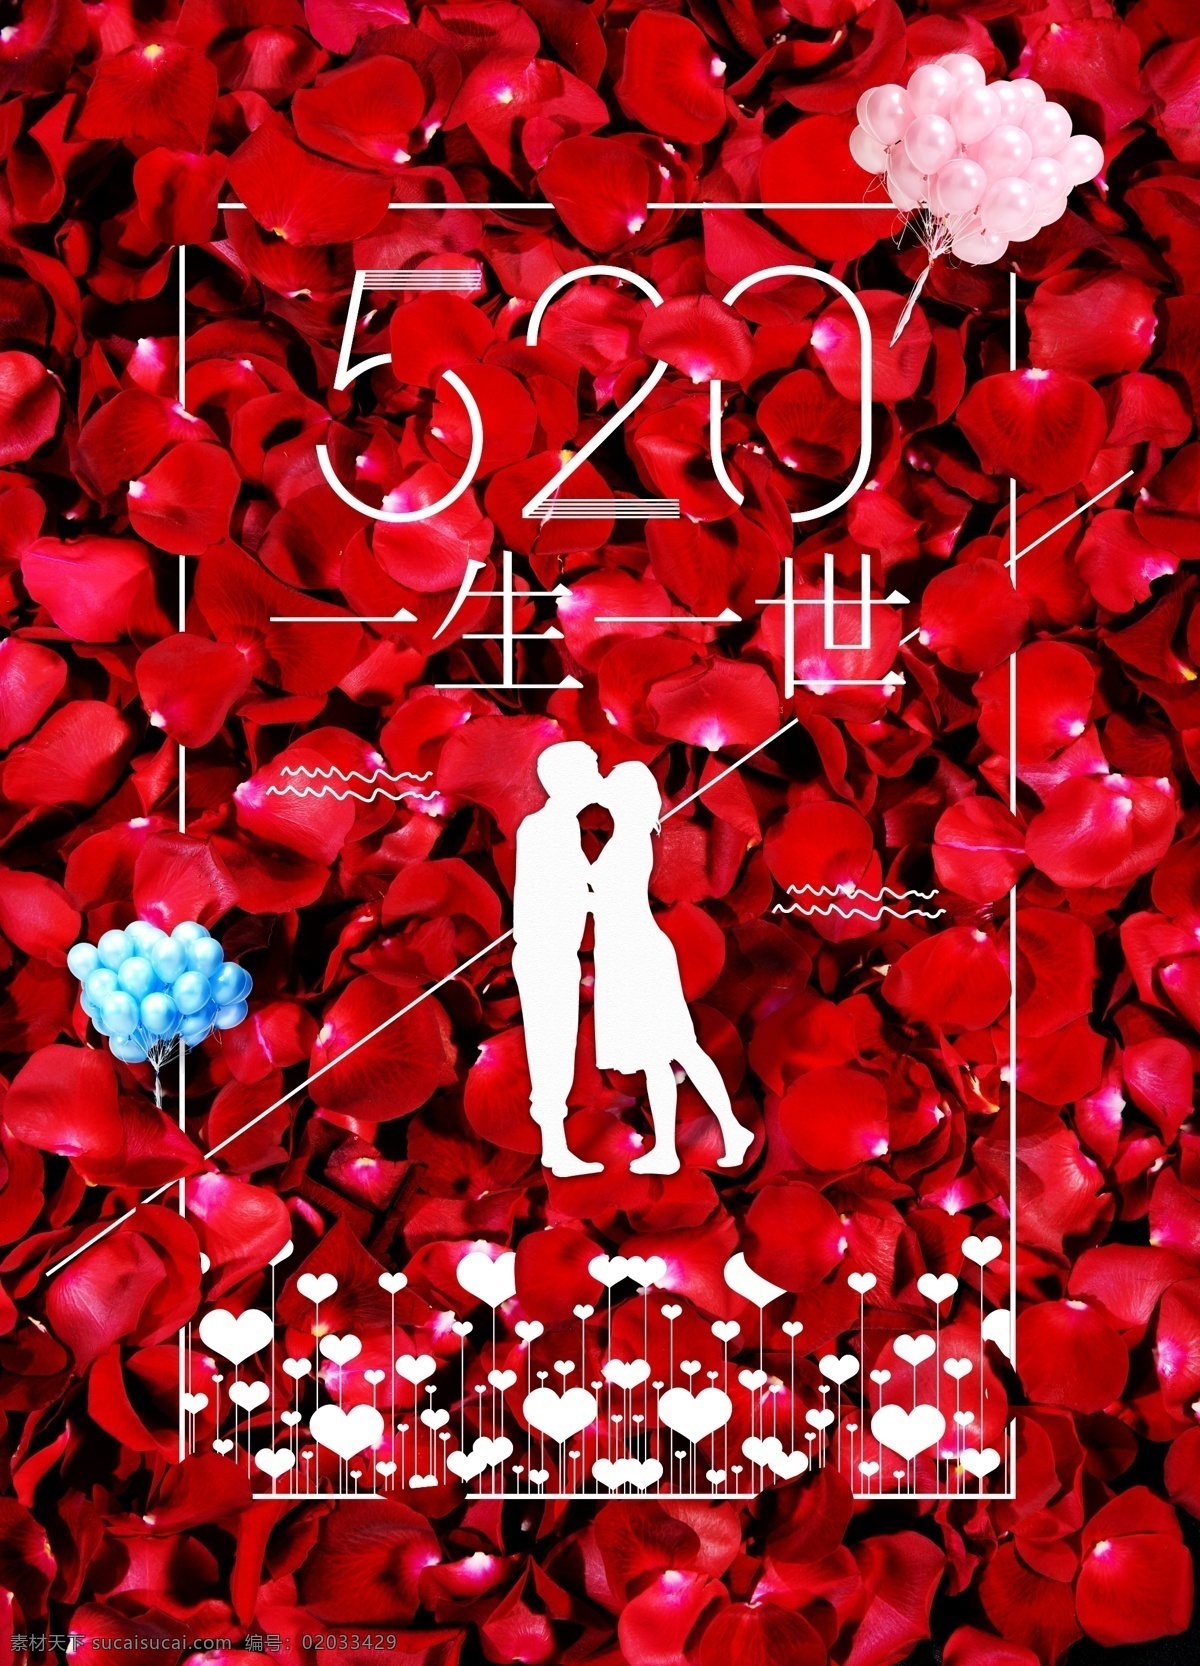 520 情人节 海报 情人节海报 表白 psd素材 玫瑰 气球 爱心 花瓣 节日海报